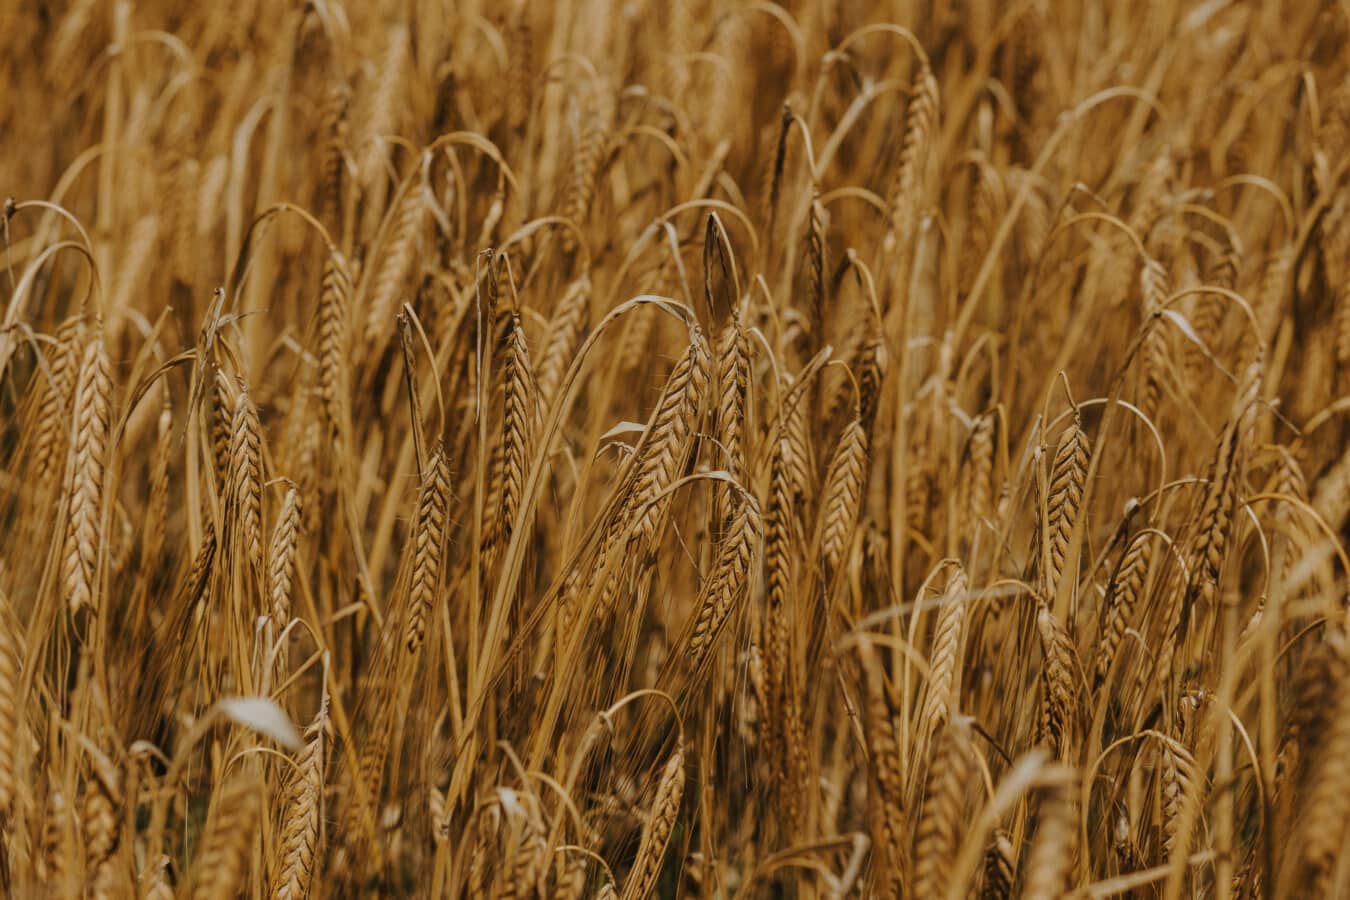 ánh sáng vàng, Wheatfield, lúa mì, ngũ cốc, hạt giống, rơm, ngũ cốc, mùa khô, cánh đồng bằng phẵng, nông thôn